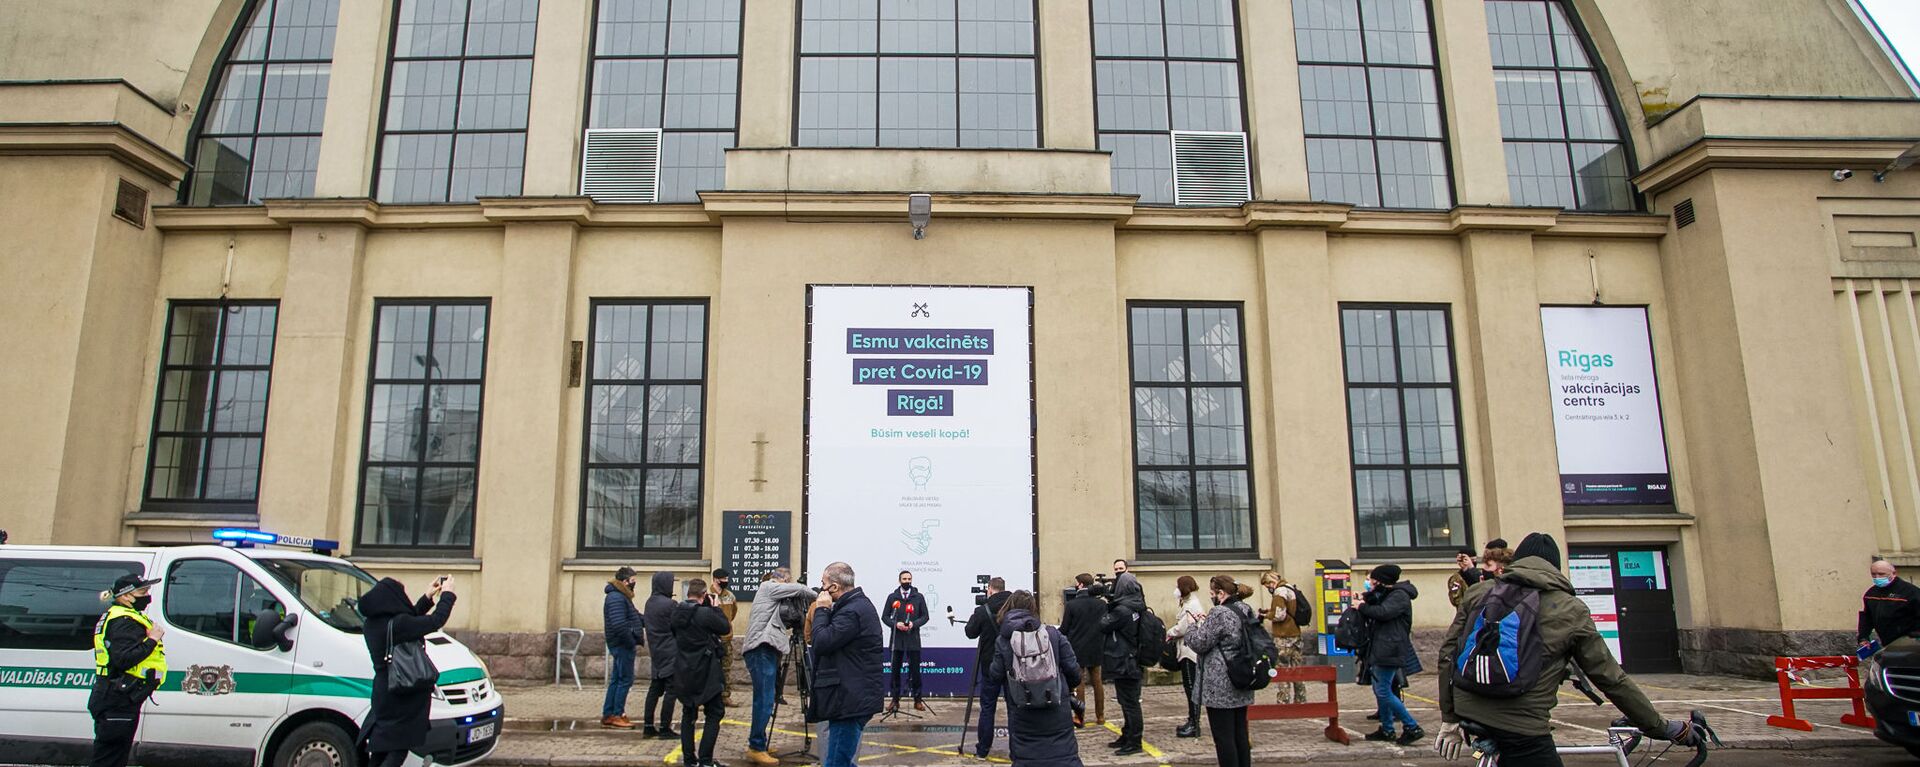 Центр вакцинации открылся в Гастрономическом павильоне Центрального рынка в Риге - Sputnik Латвия, 1920, 01.04.2021